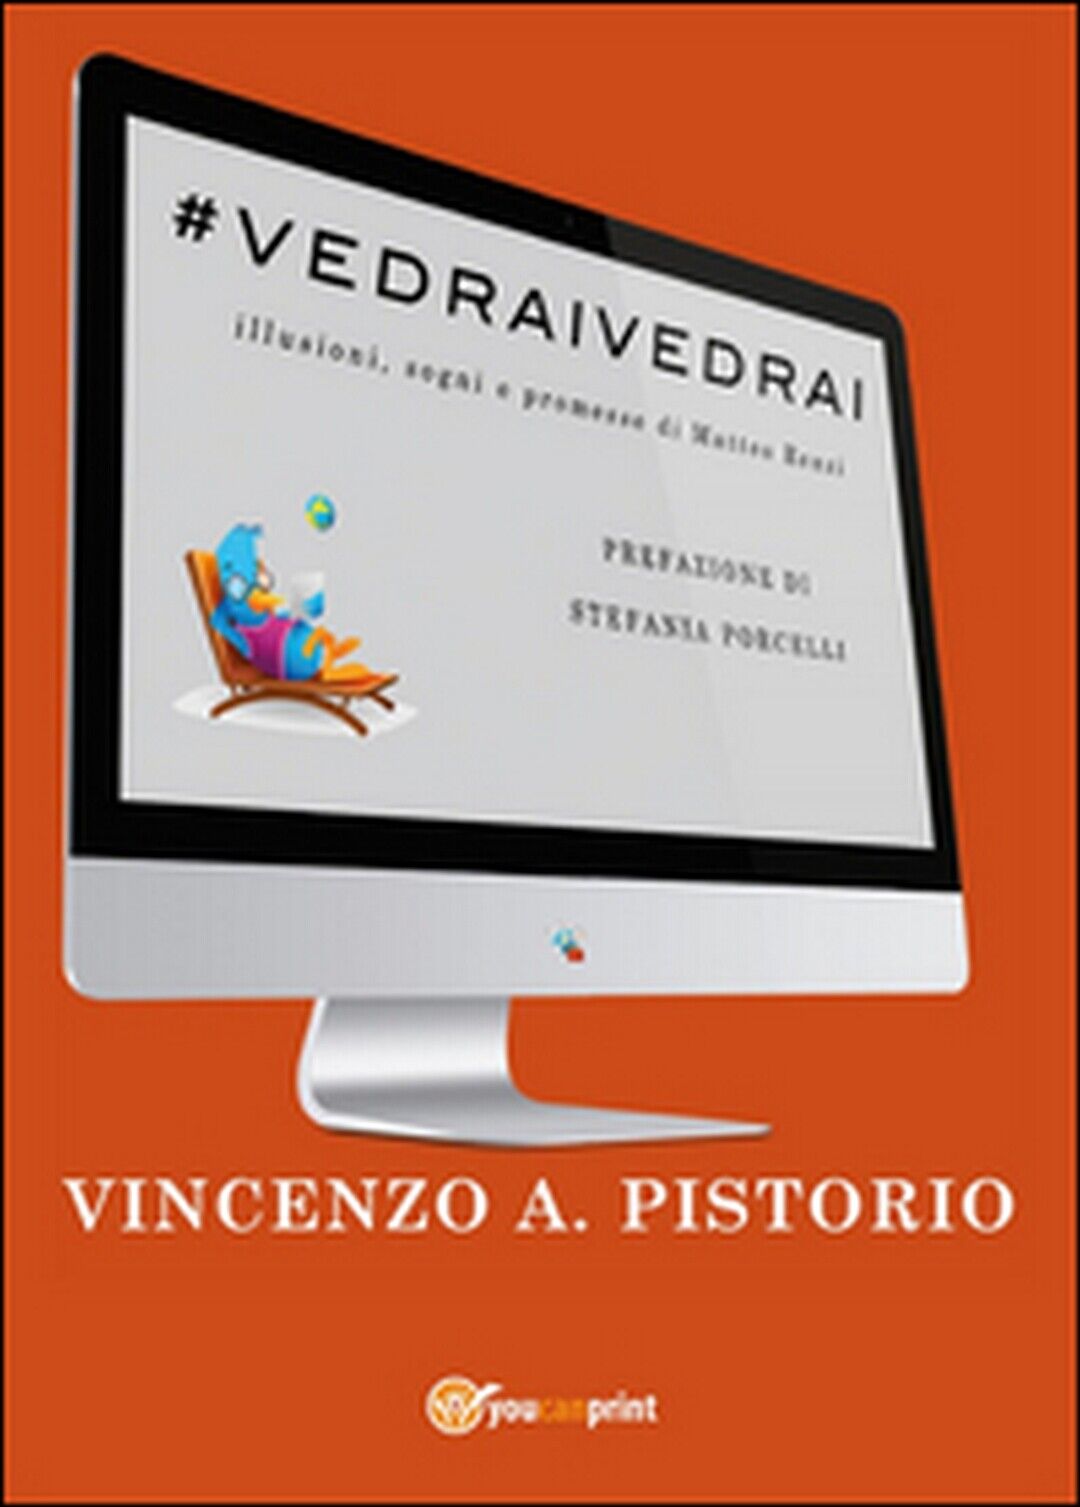 #vedraivedrai  di Vincenzo A. Pistorio,  2015,  Youcanprint